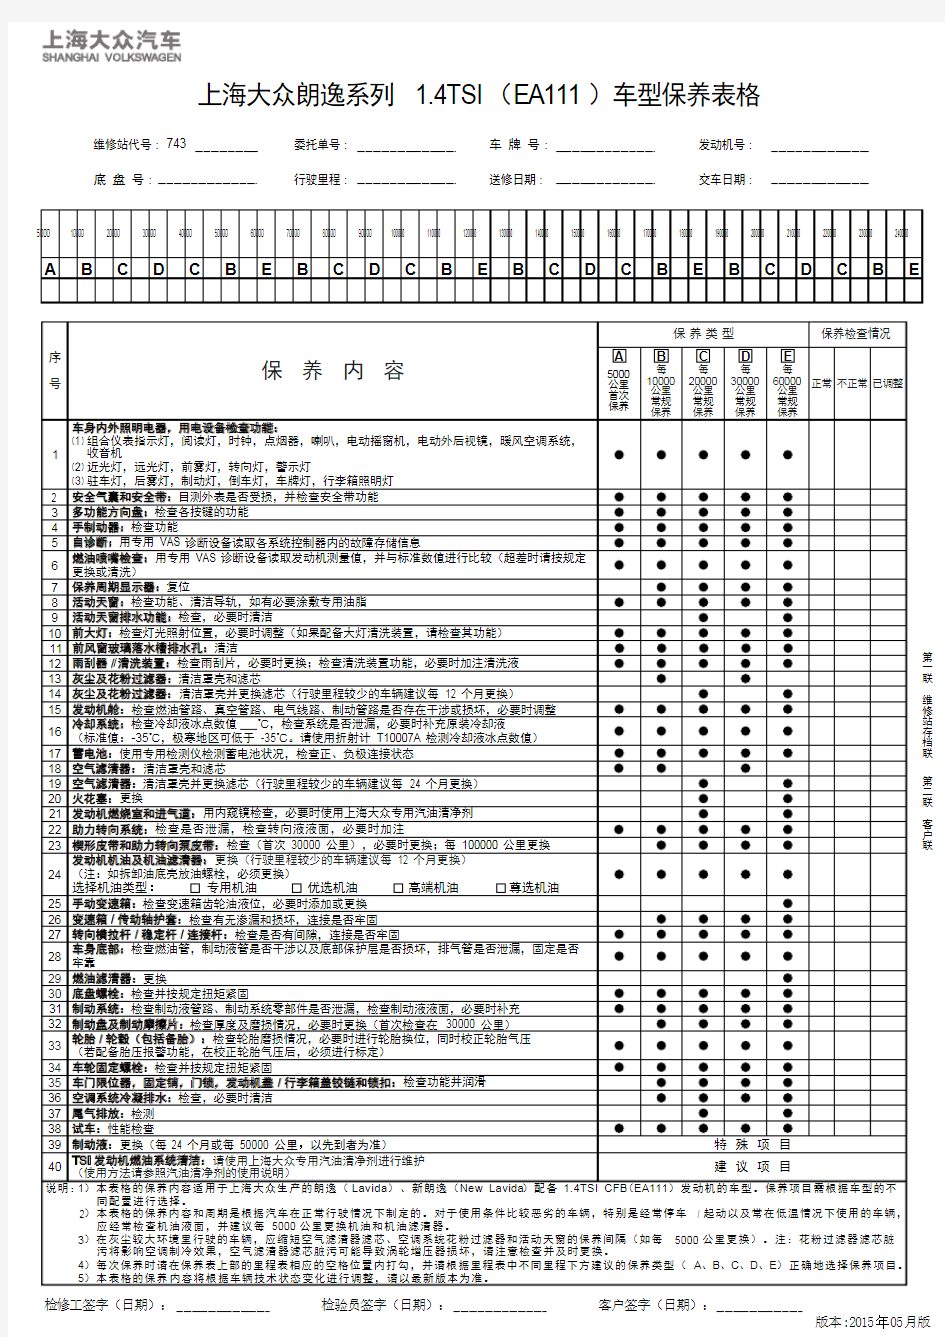 上海大众朗逸系列 1.4TSI(EA111)车型保养表格